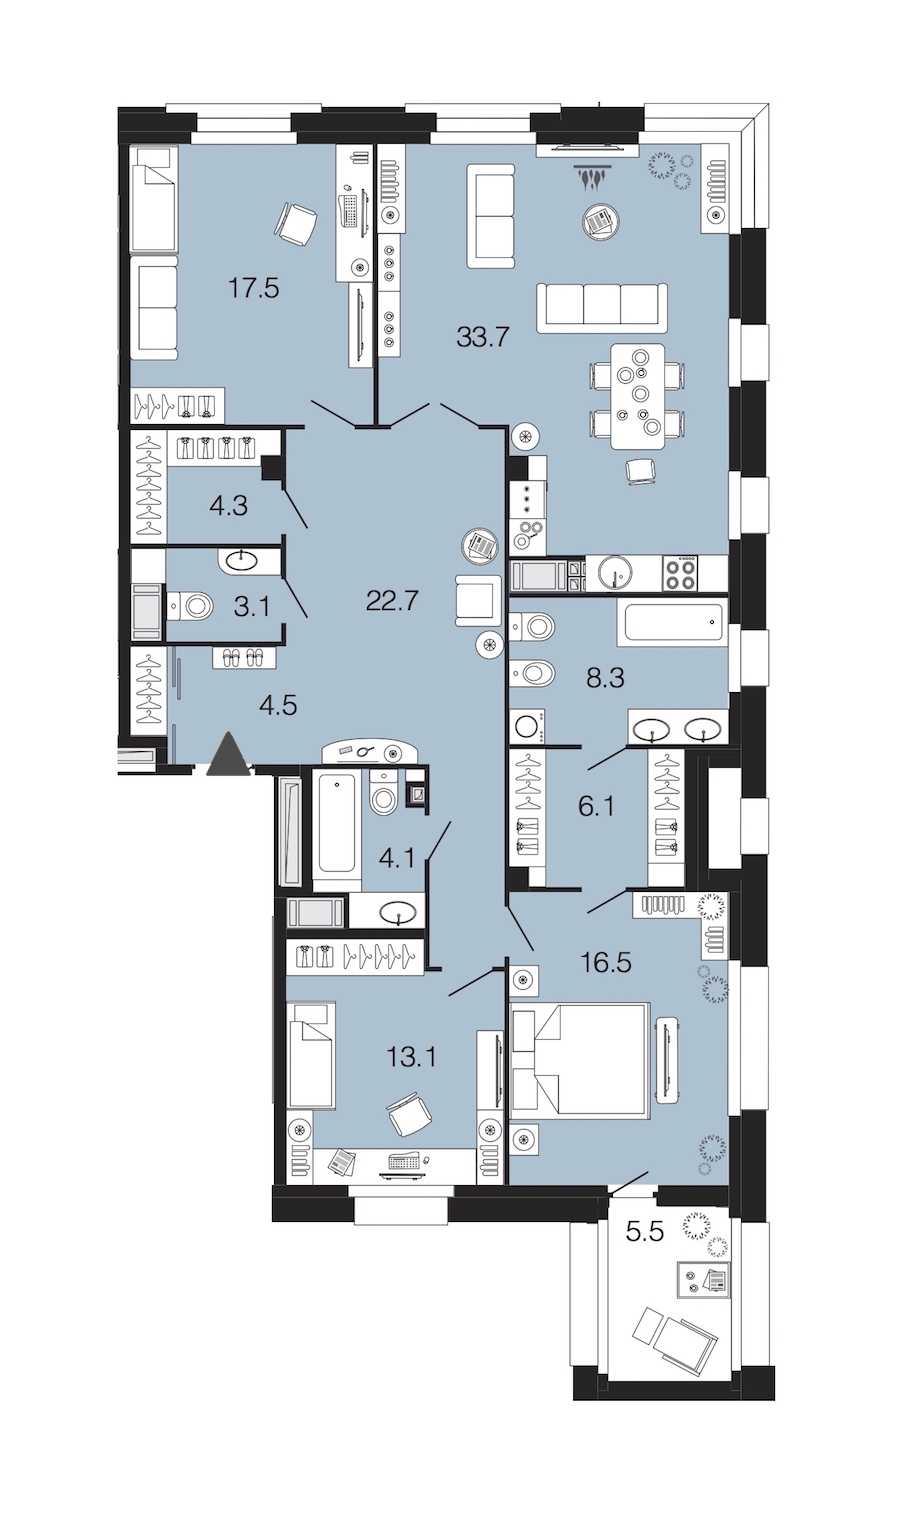 Трехкомнатная квартира в : площадь 133.9 м2 , этаж: 6 – купить в Санкт-Петербурге